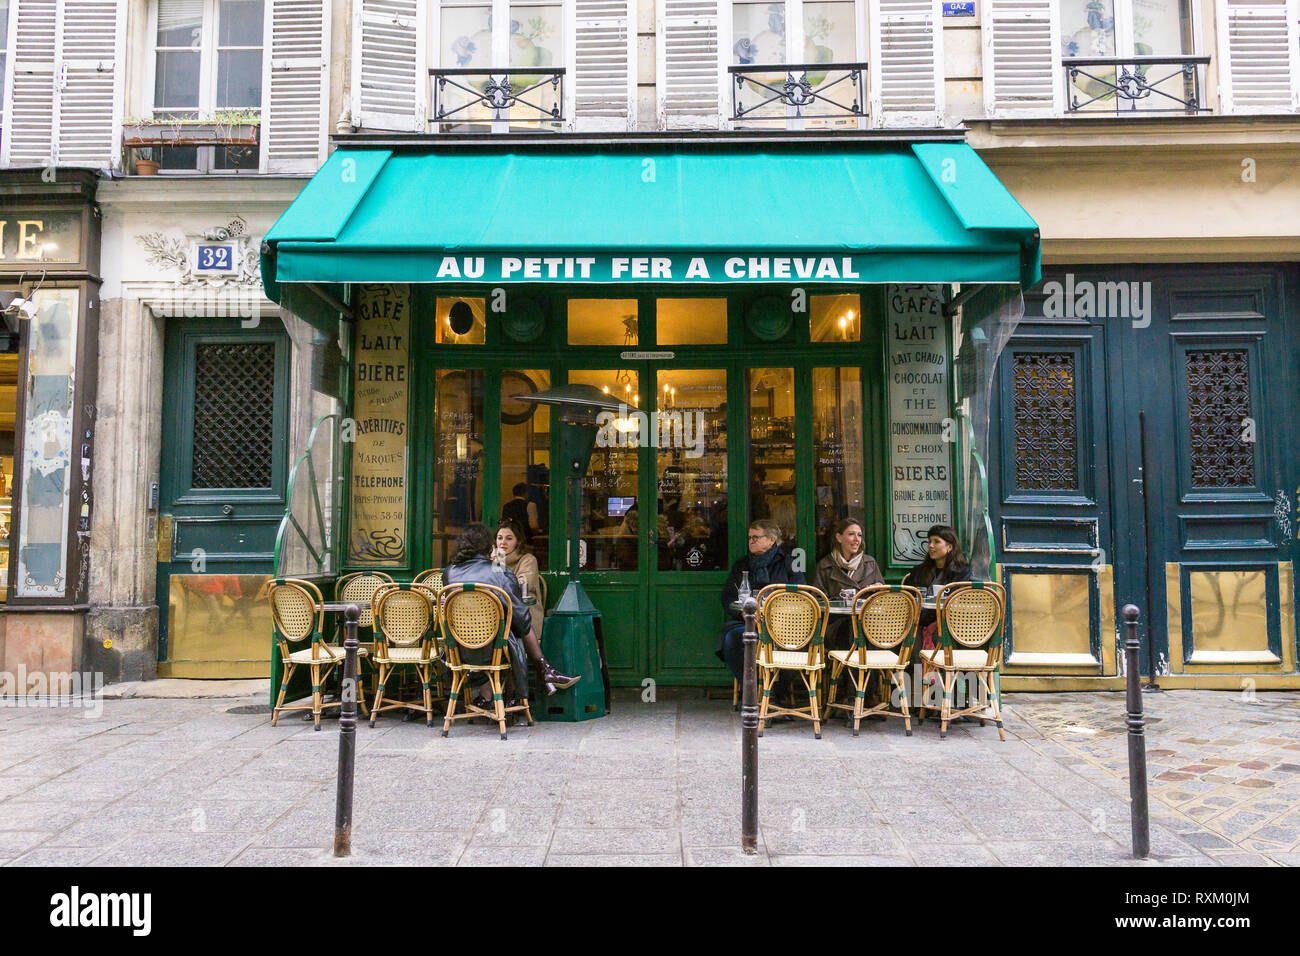 Patroni godendo il caffè pomeridiano presso il cafe Au Petit Fer a cheval nel quartiere Marais di Parigi, Francia. Foto Stock